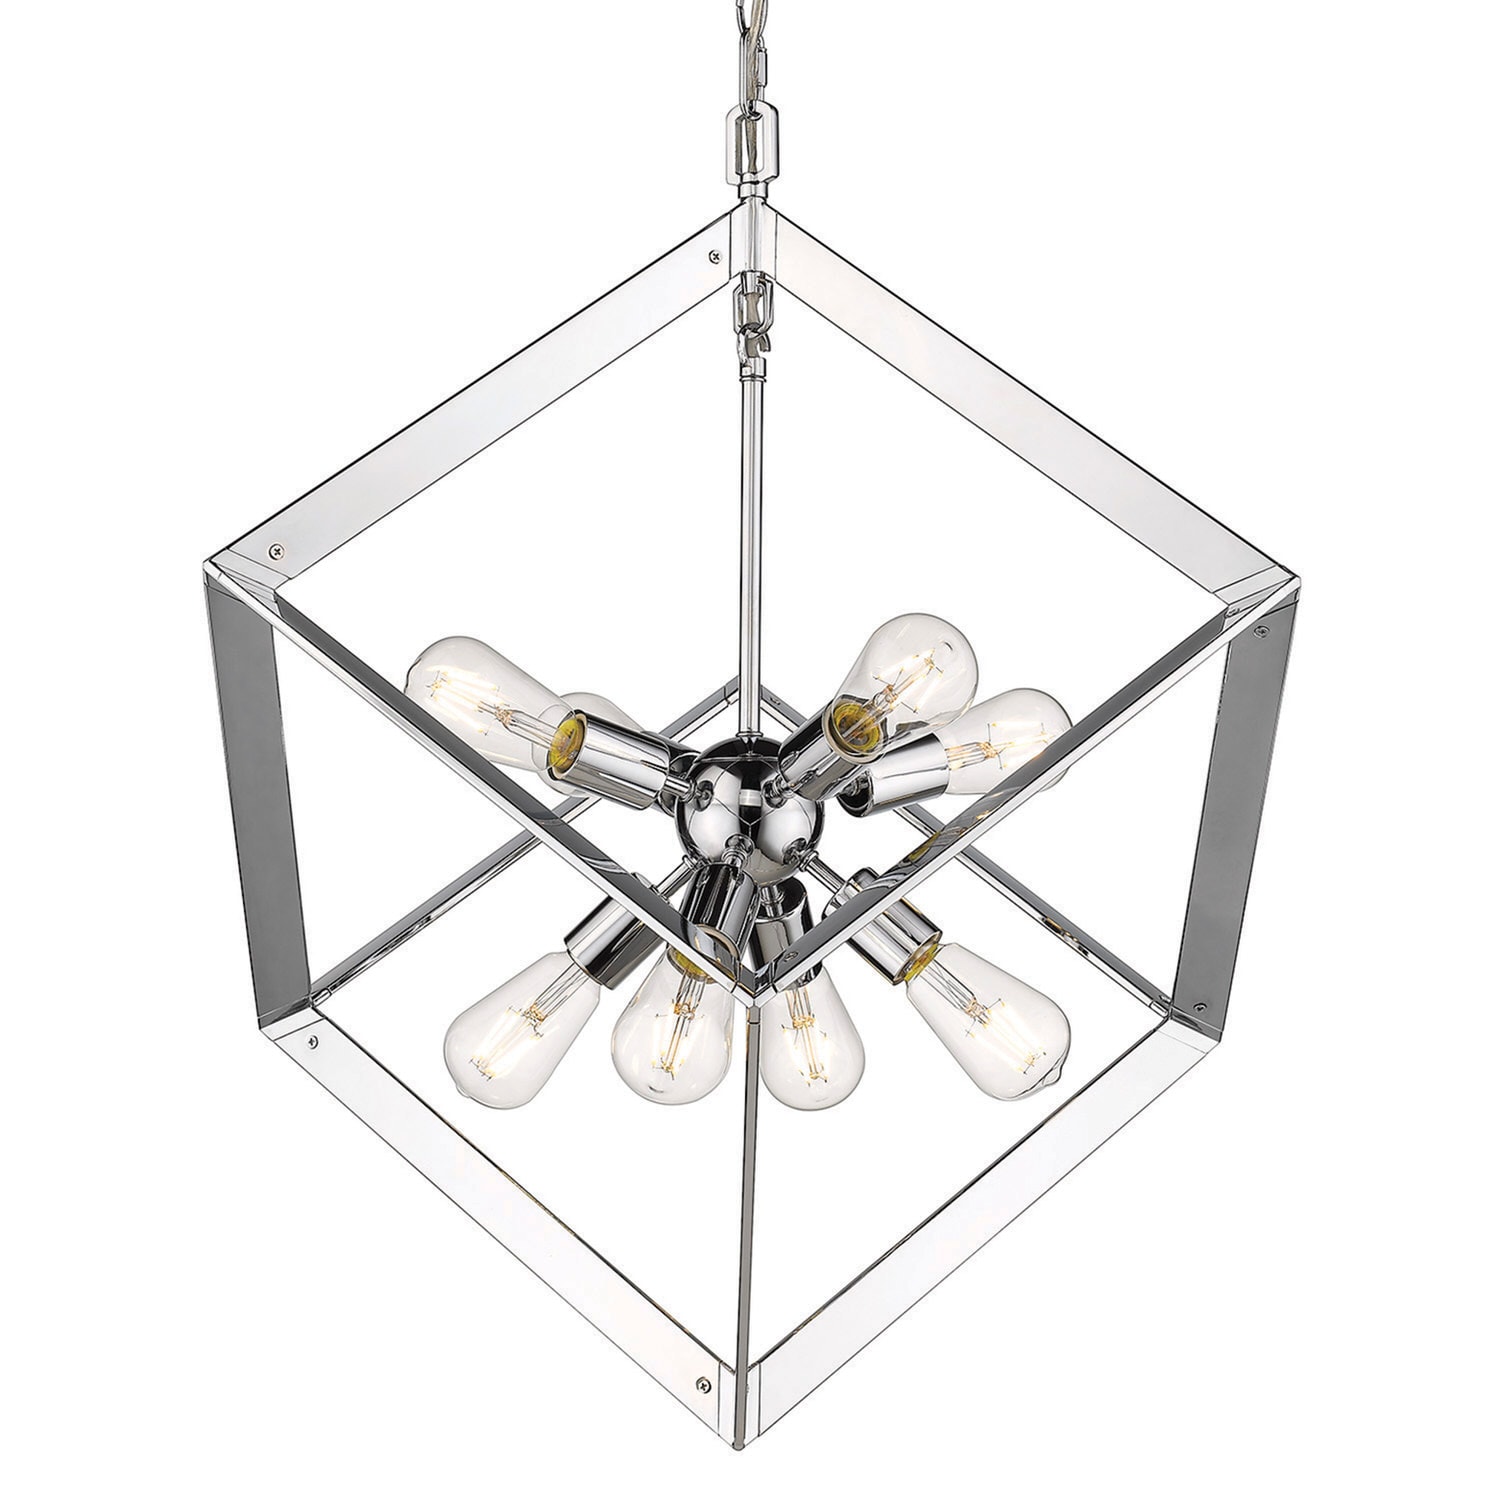 Golden lighting Architect 8 light pendant in chrome